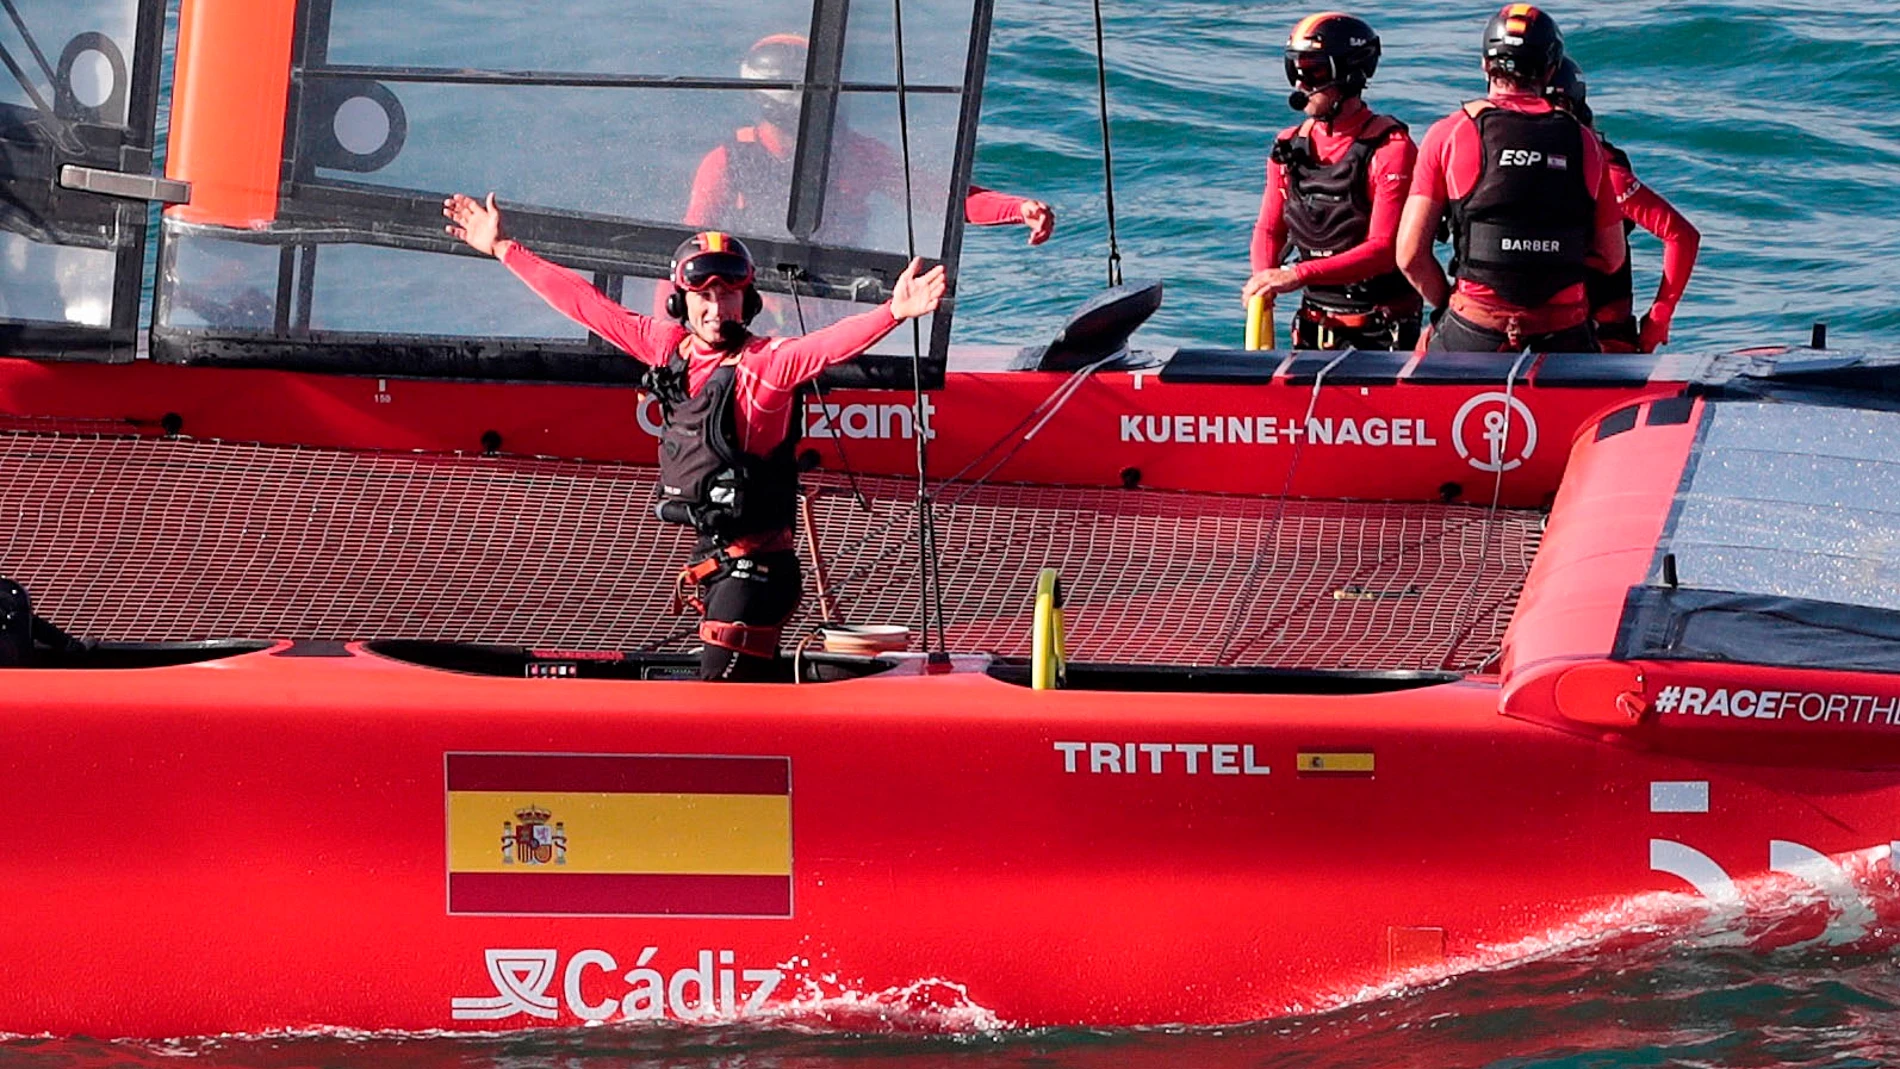 El equipo español celebra su victoria en la segunda regata durante el Campeonato Spain Sail Grand Prix | Andalucía - Cádiz que se disputa este fin de semana en aguas de la bahía gaditana